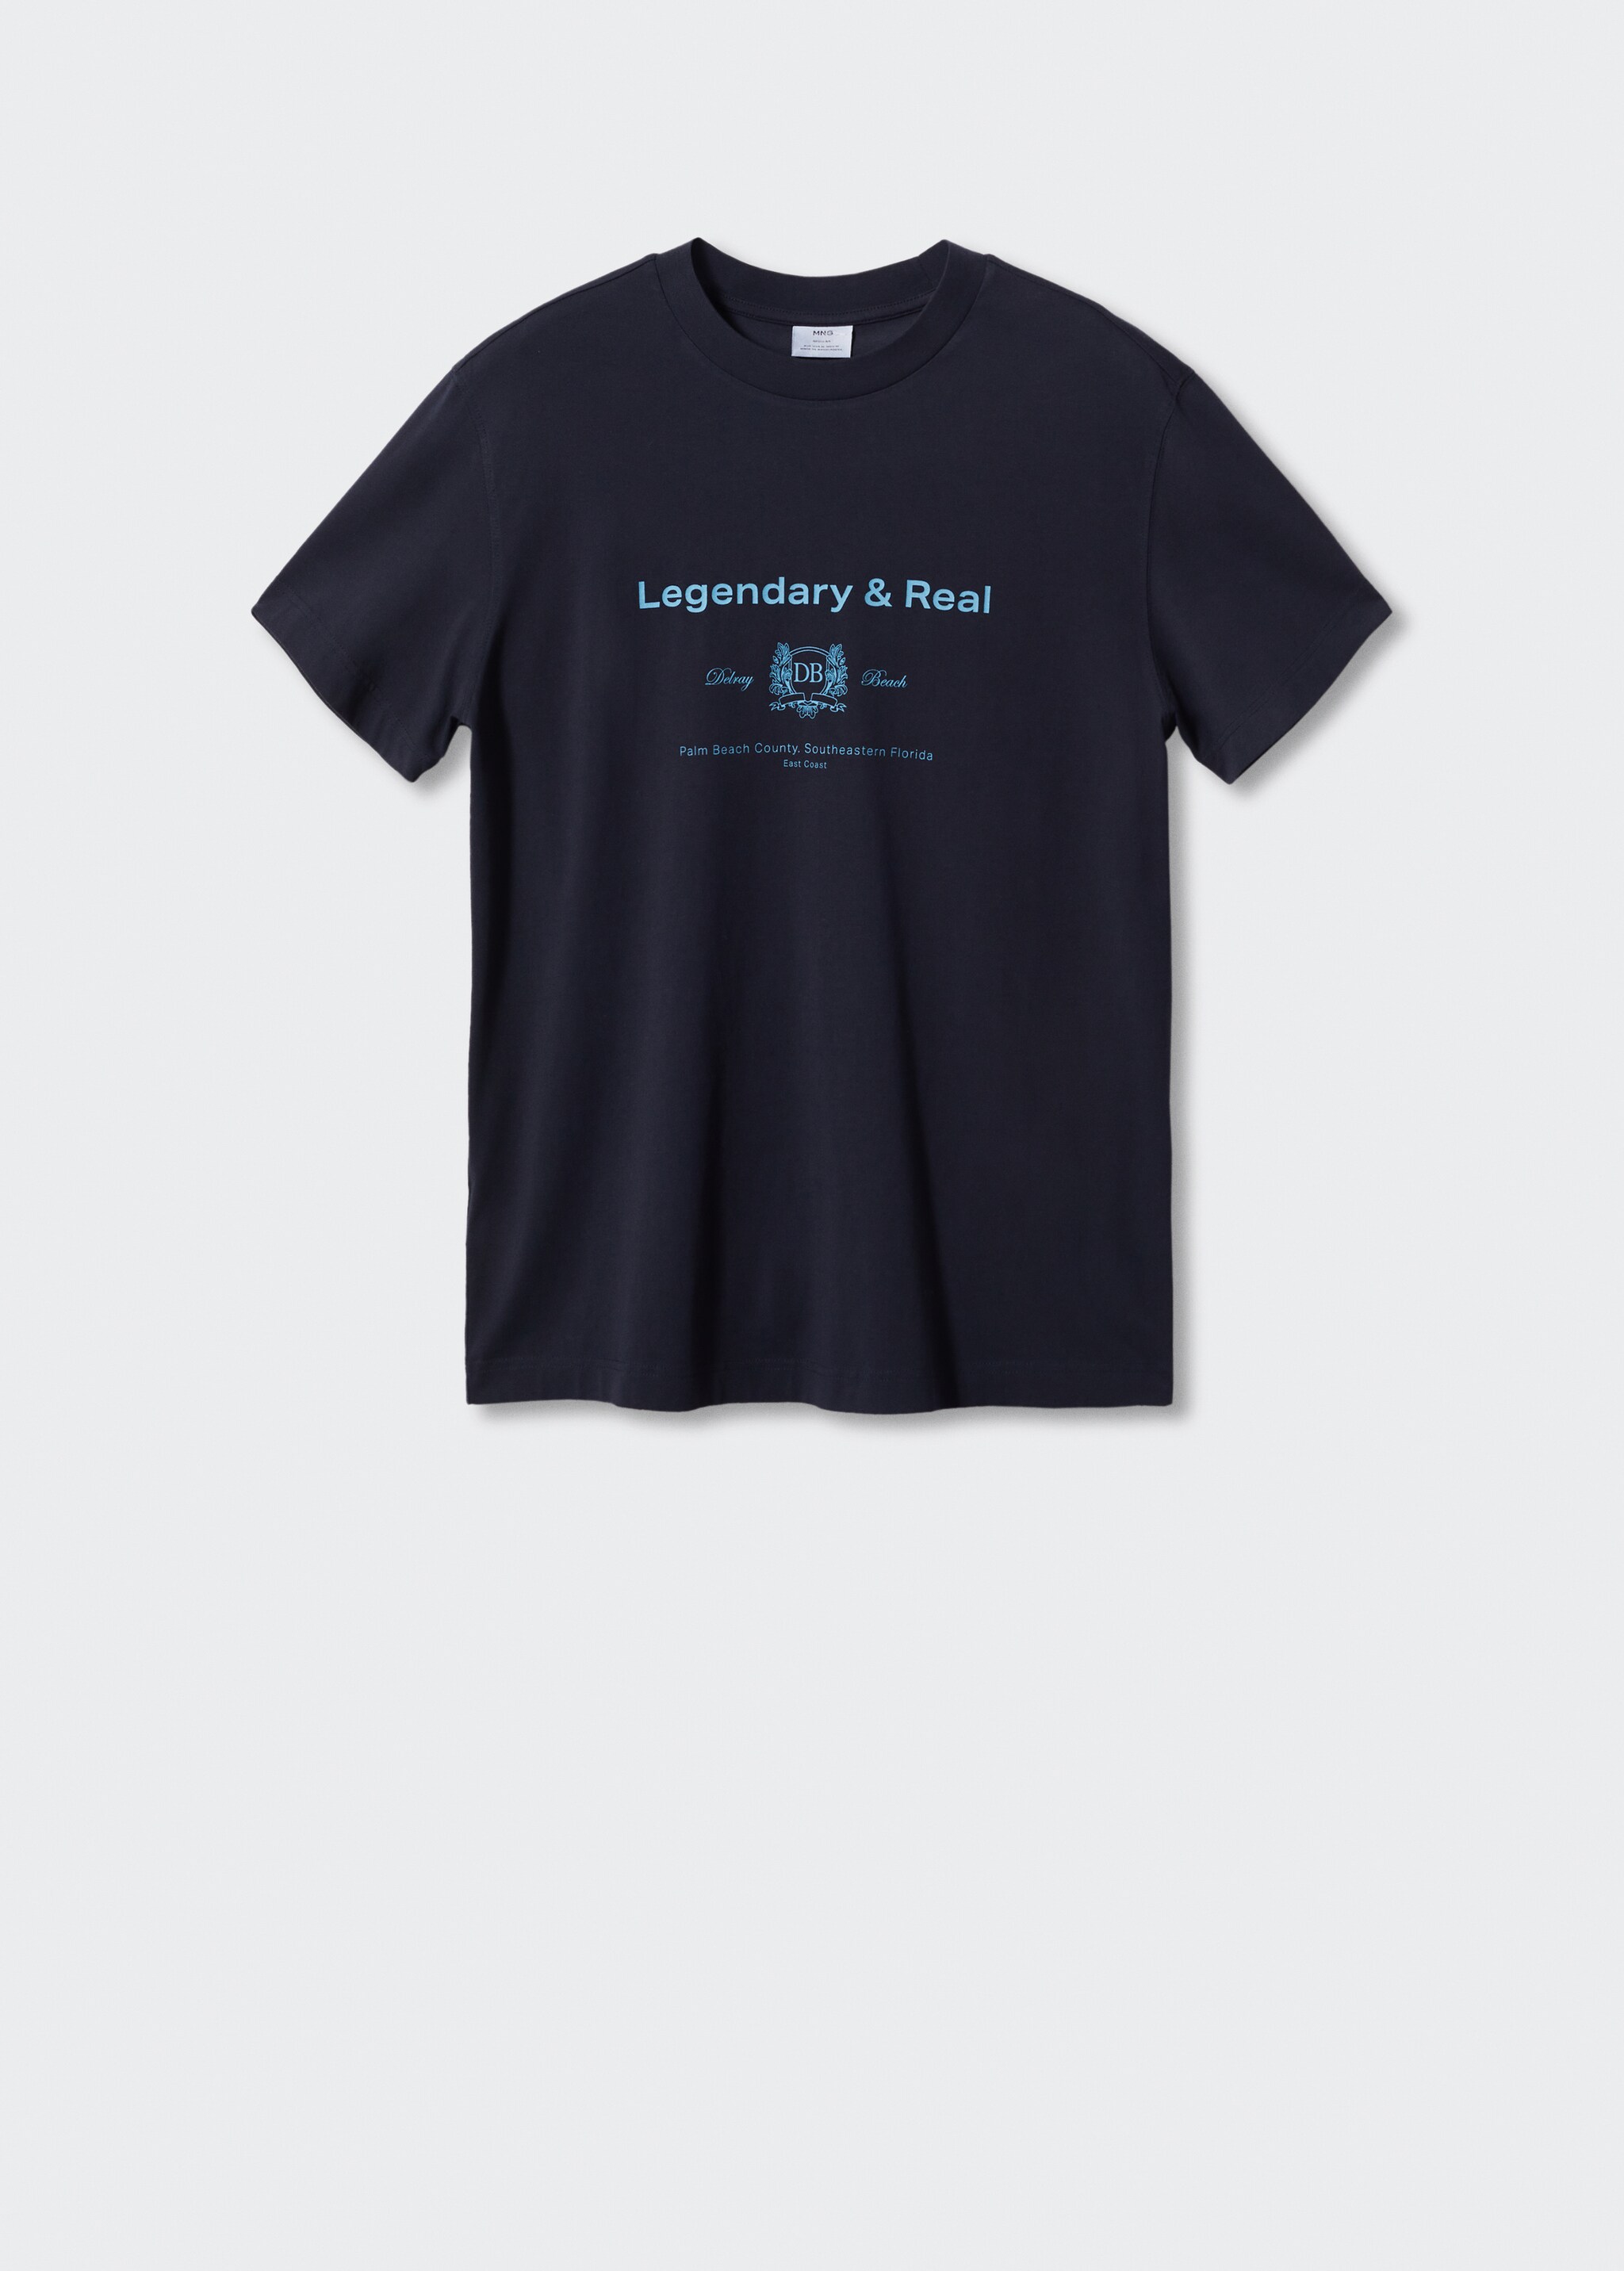 Camiseta 100% algodón texto - Artículo sin modelo